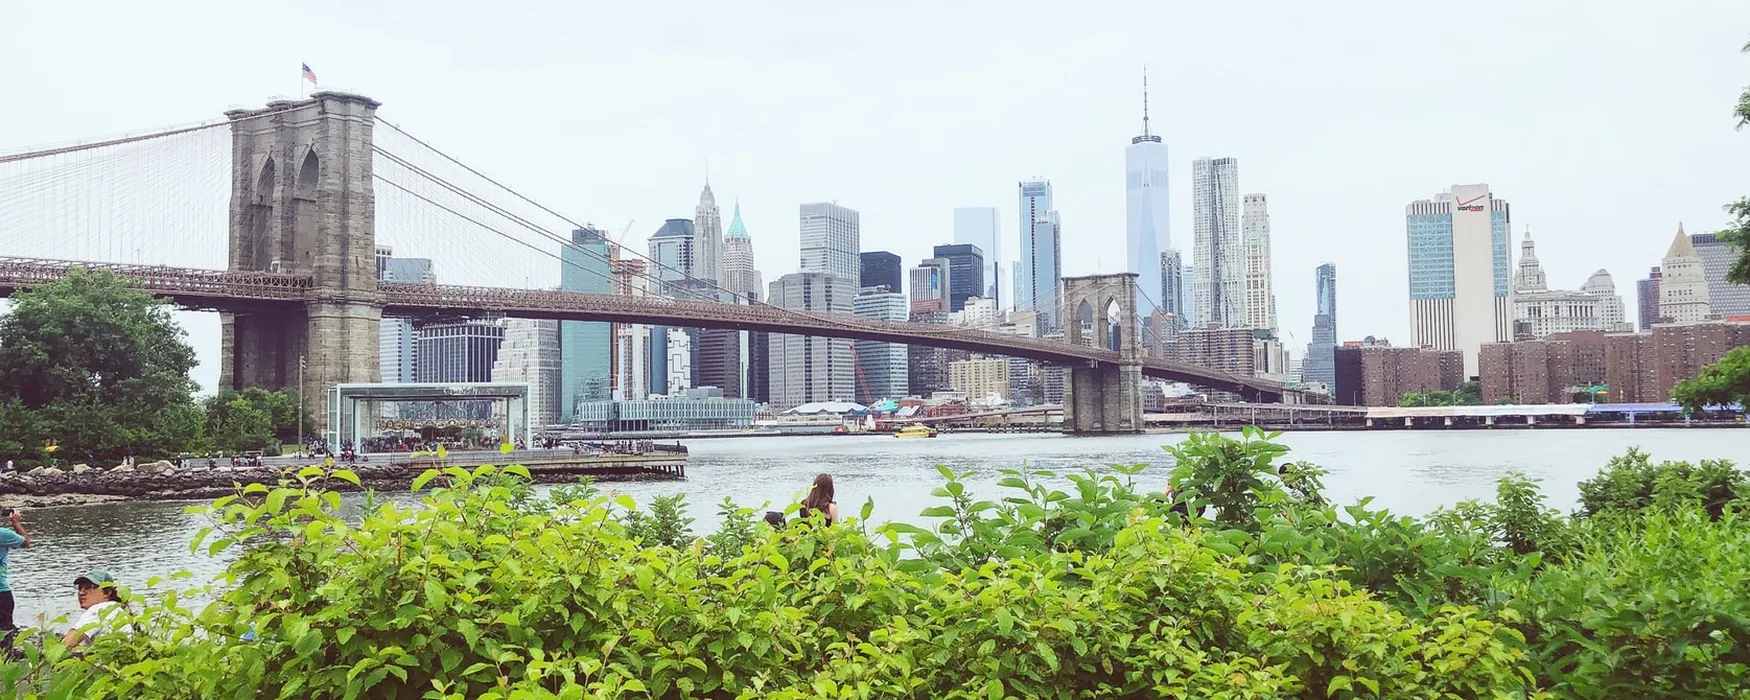 La migliore vista su New York con lo skyline di Manhattan